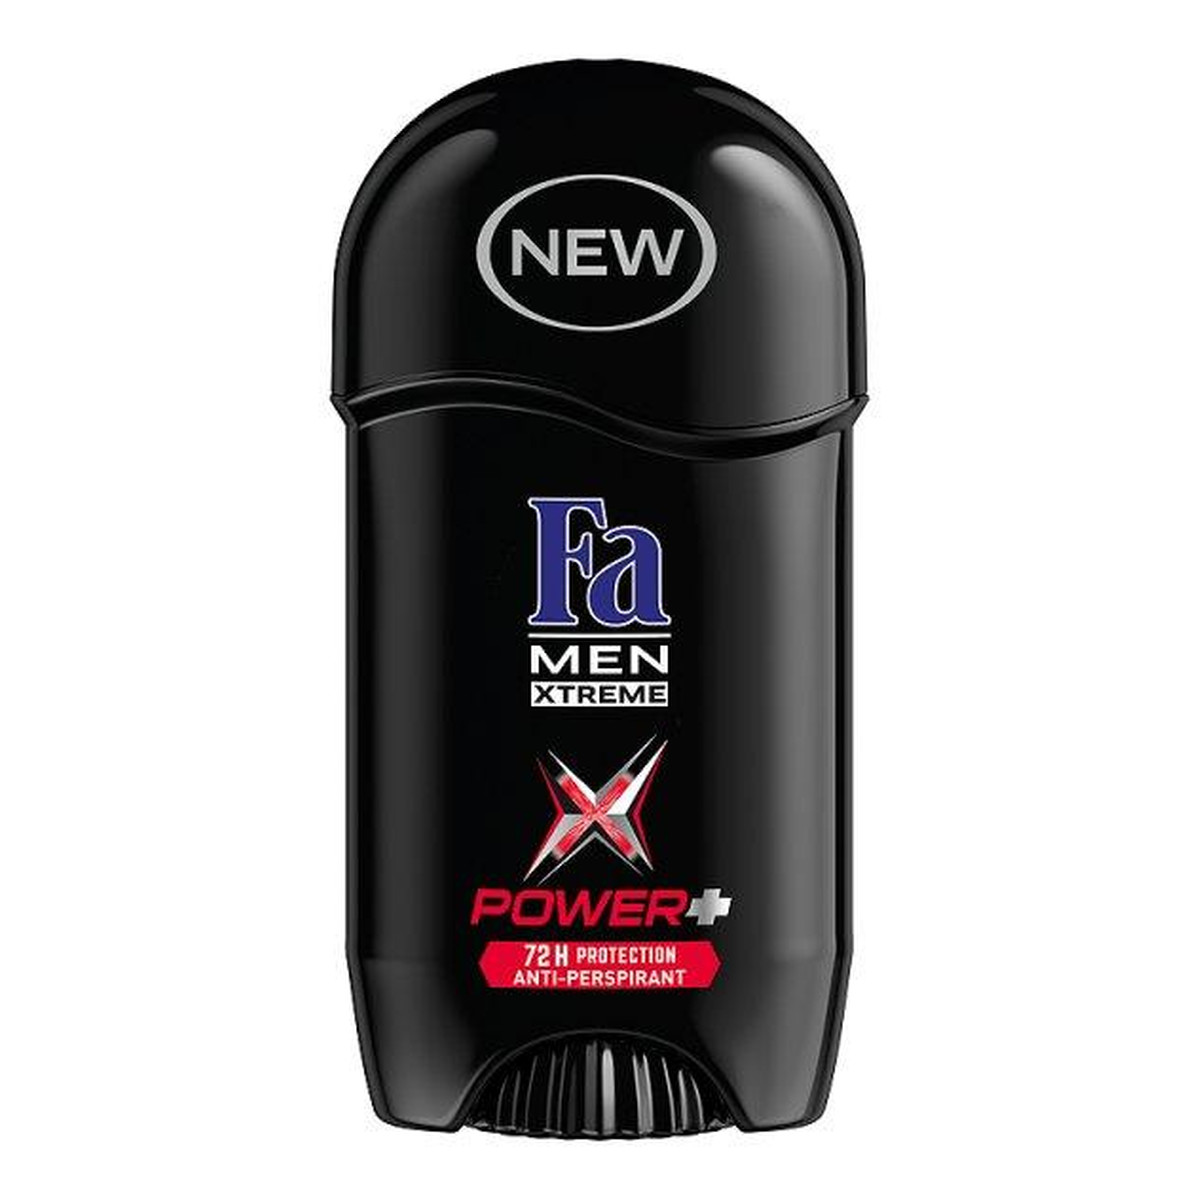 Fa Men Xtreme Power+ dezodorant sztyft 50ml